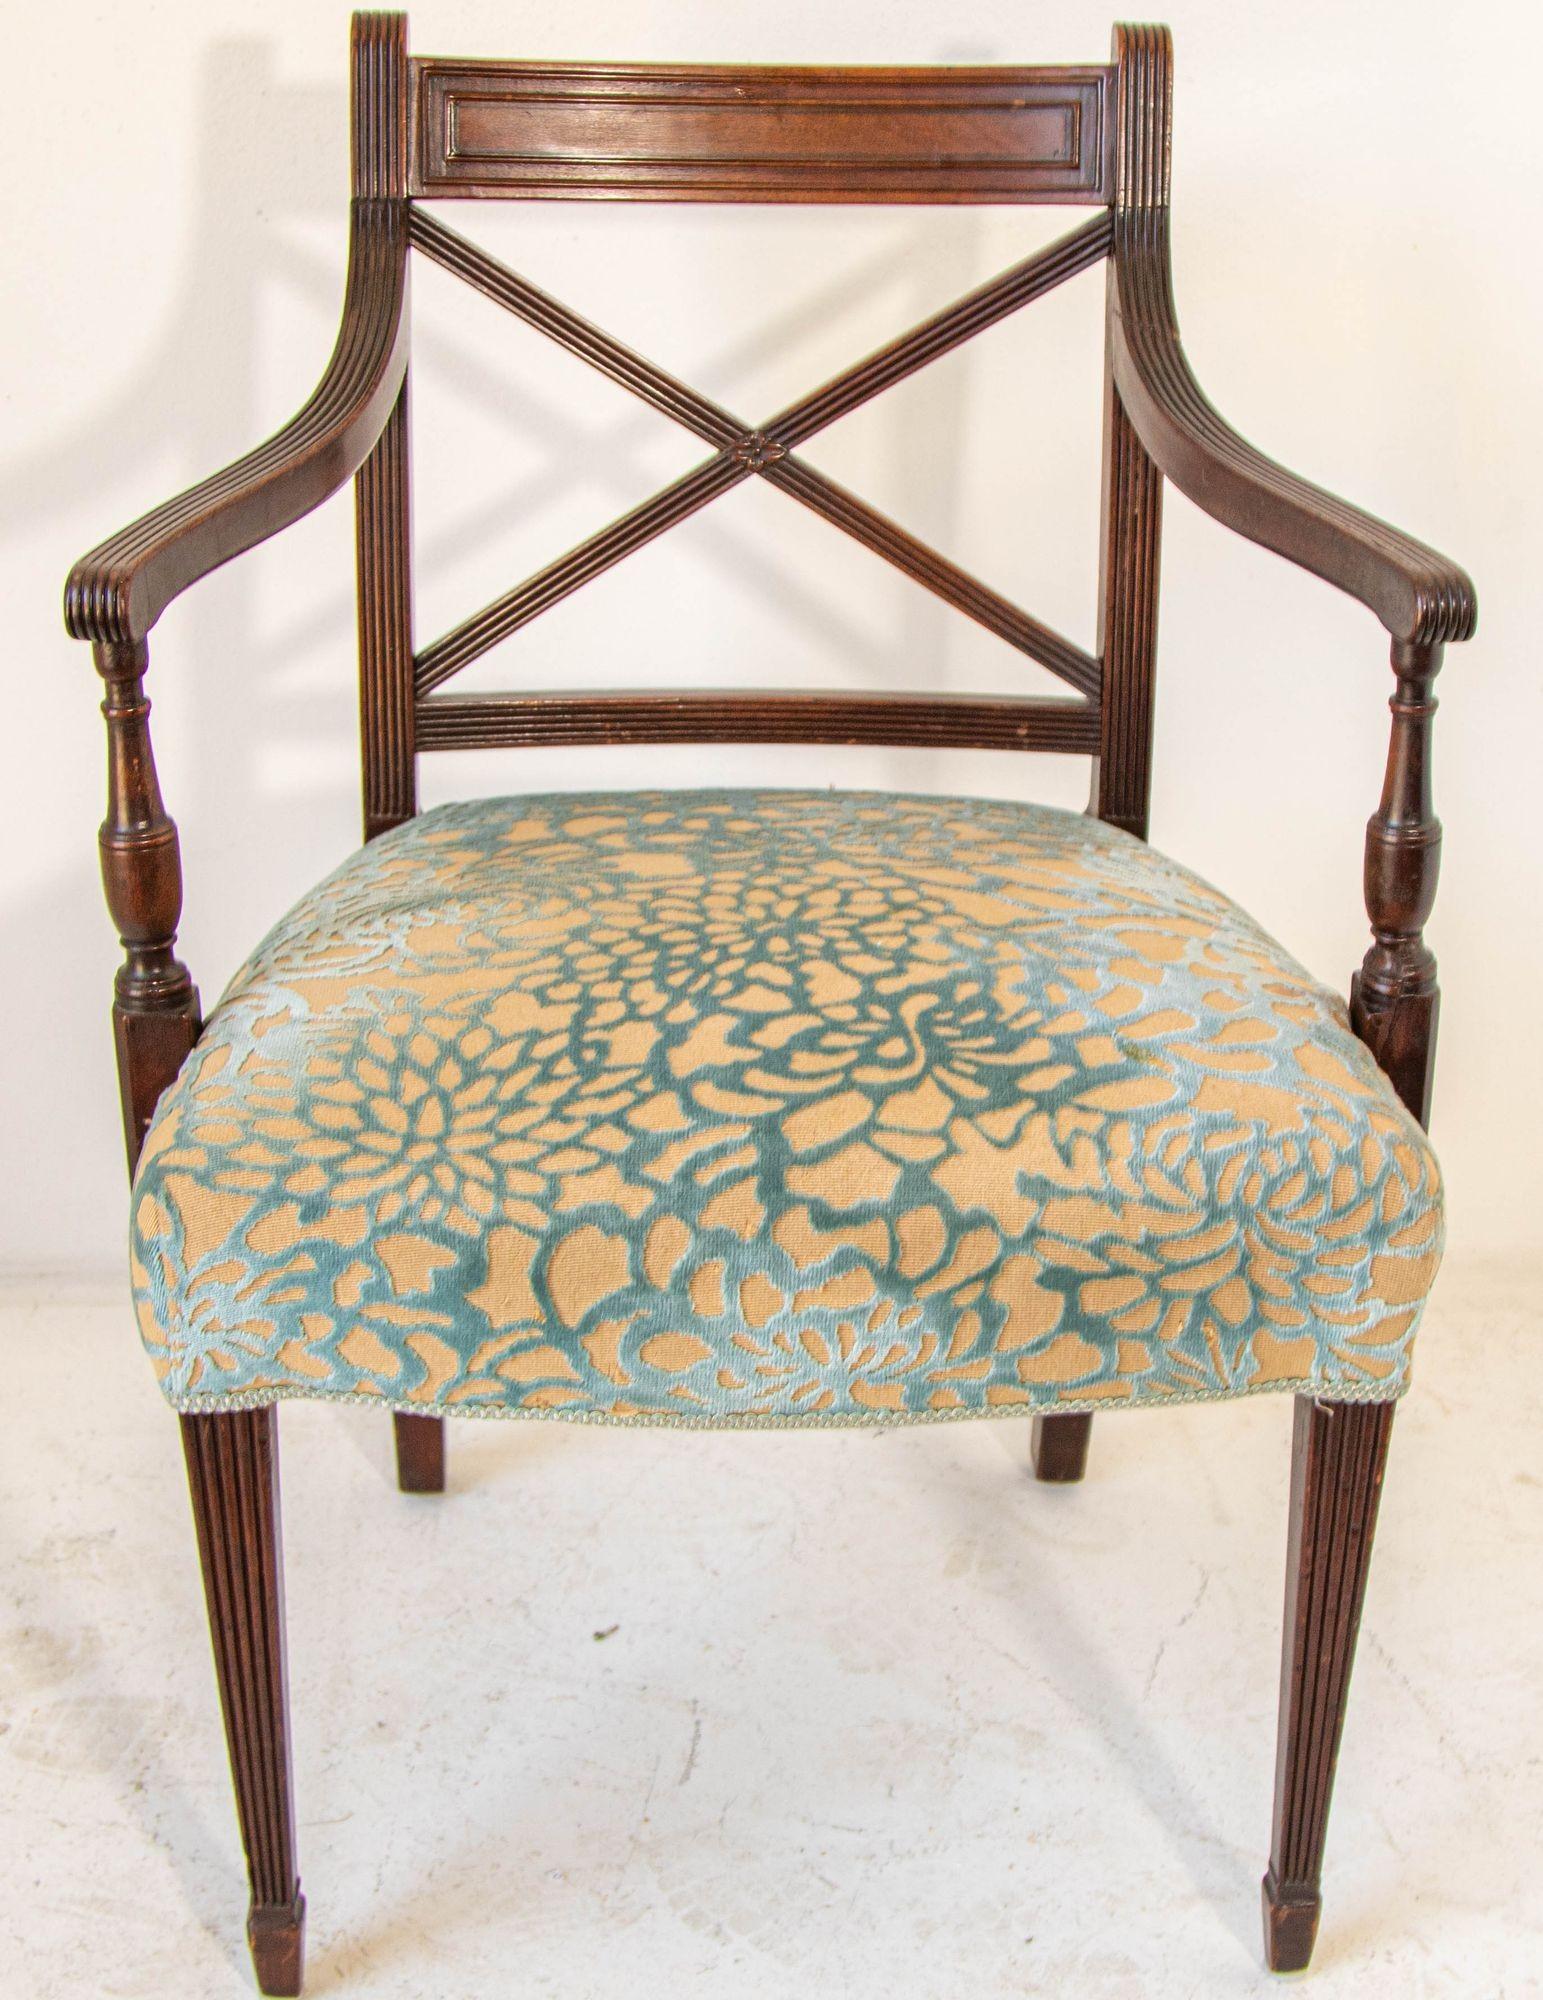 Vintage Hollywood Regency English Style Hand Carved Wood Side Chair. 
Beistellstuhl aus walnussfarben gebeiztem Massivholz, mit gerollten Armlehnen und ausgestellten Beinen.
Gepolsterter Sitz mit geschäumter Basis für Komfort und Stil. 
Dieser